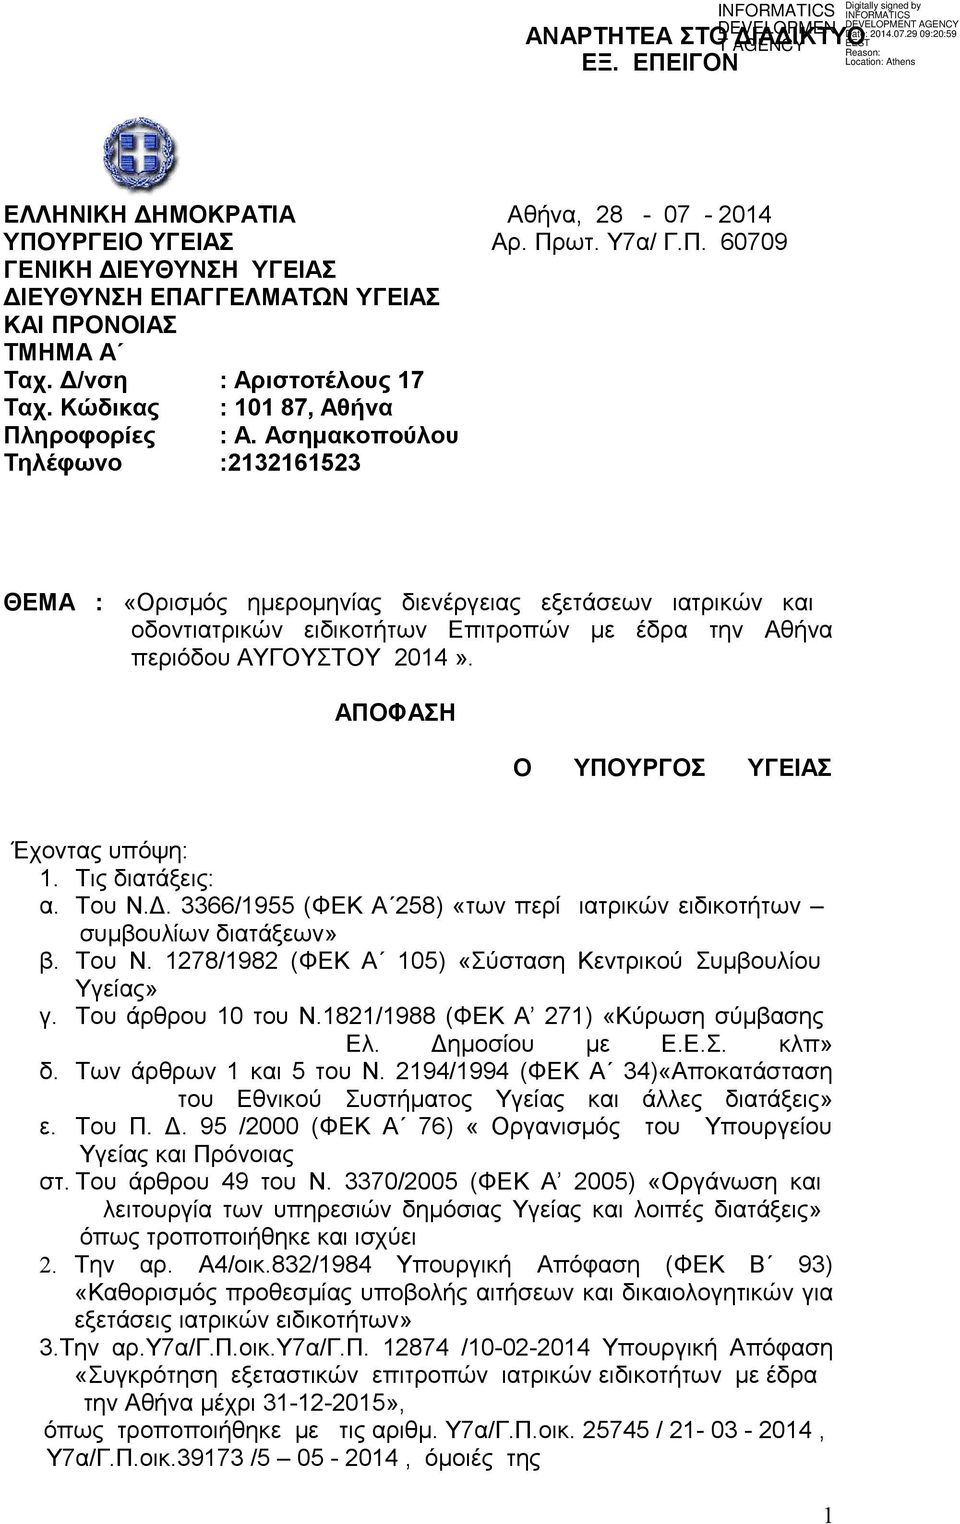 Ασημακοπούλου Τηλέφωνο :2132161523 ΘΕΜΑ : «Ορισμός ημερομηνίας διενέργειας εξετάσεων ιατρικών και οδοντιατρικών ειδικοτήτων Επιτροπών με έδρα την Αθήνα περιόδου ΑΥΓΟΥΣΤΟΥ 2014».